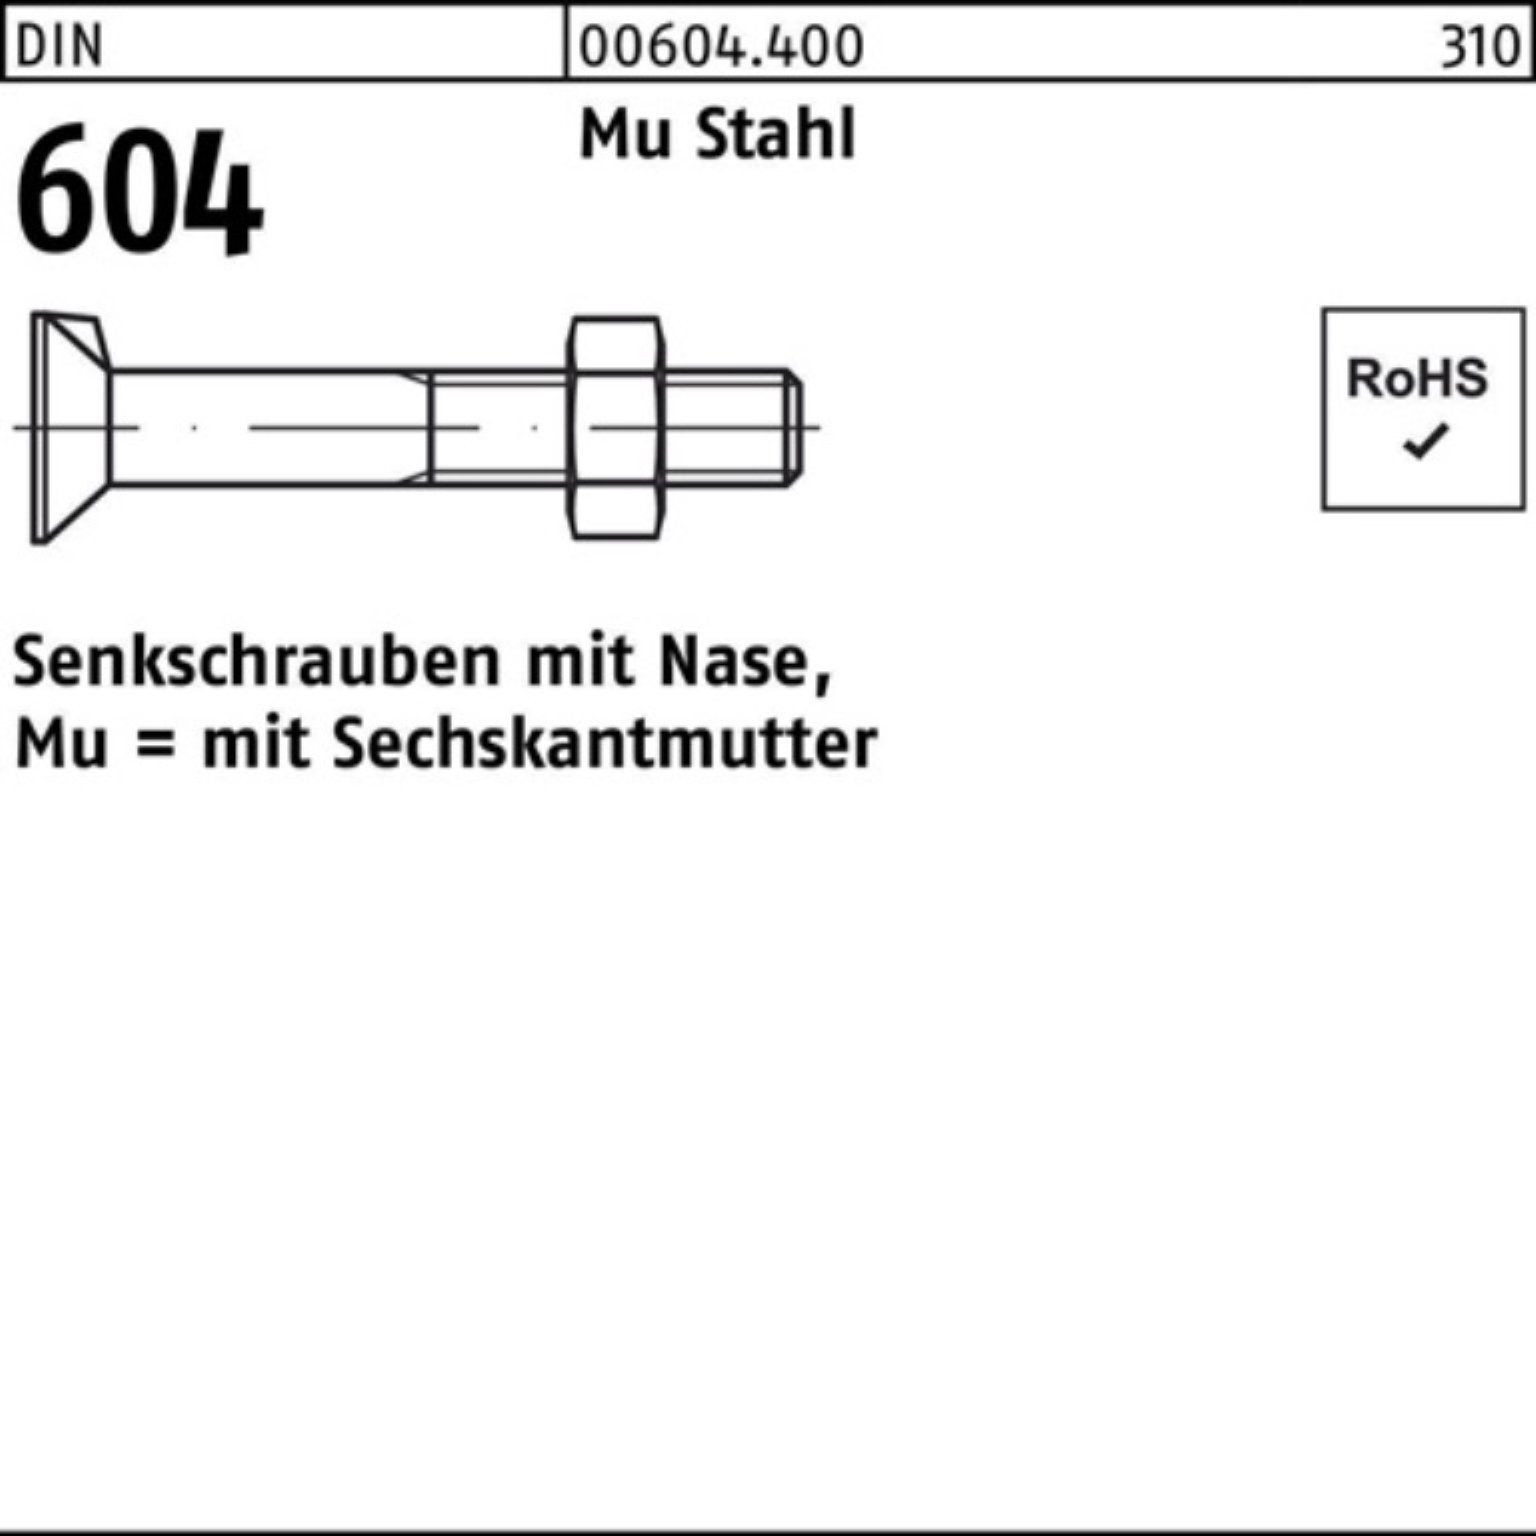 Reyher Senkschraube 100er Pack Senkschraube DIN 604 Nase/6-ktmutter M12x 70 Mu Stahl 4.6 5